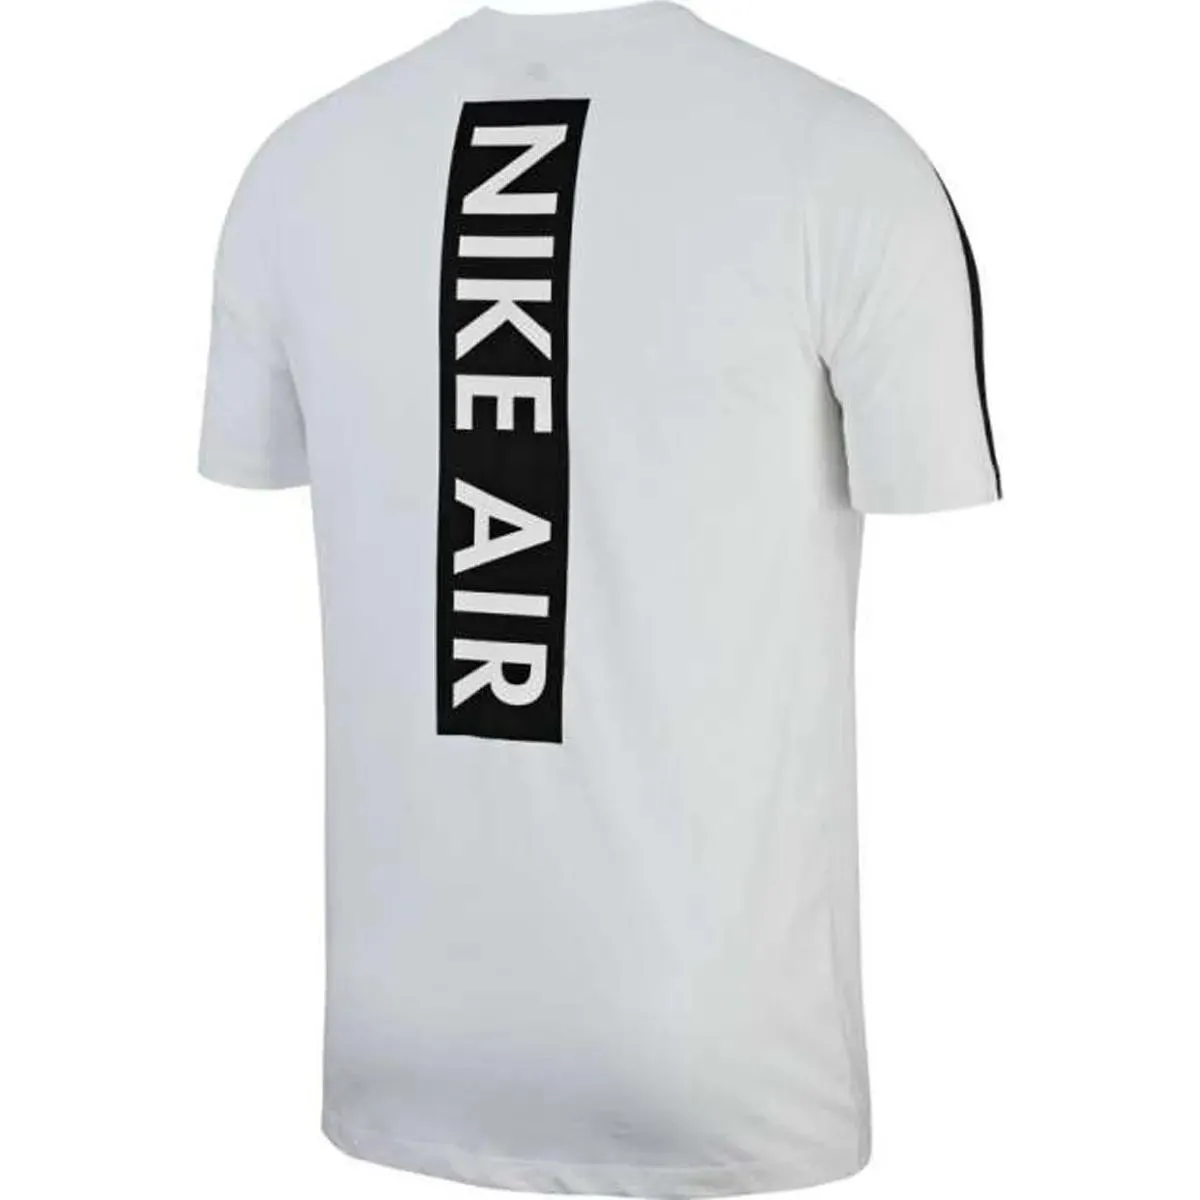 Nike T-shirt M NSW TEE CLTR NIKE AIR 3 